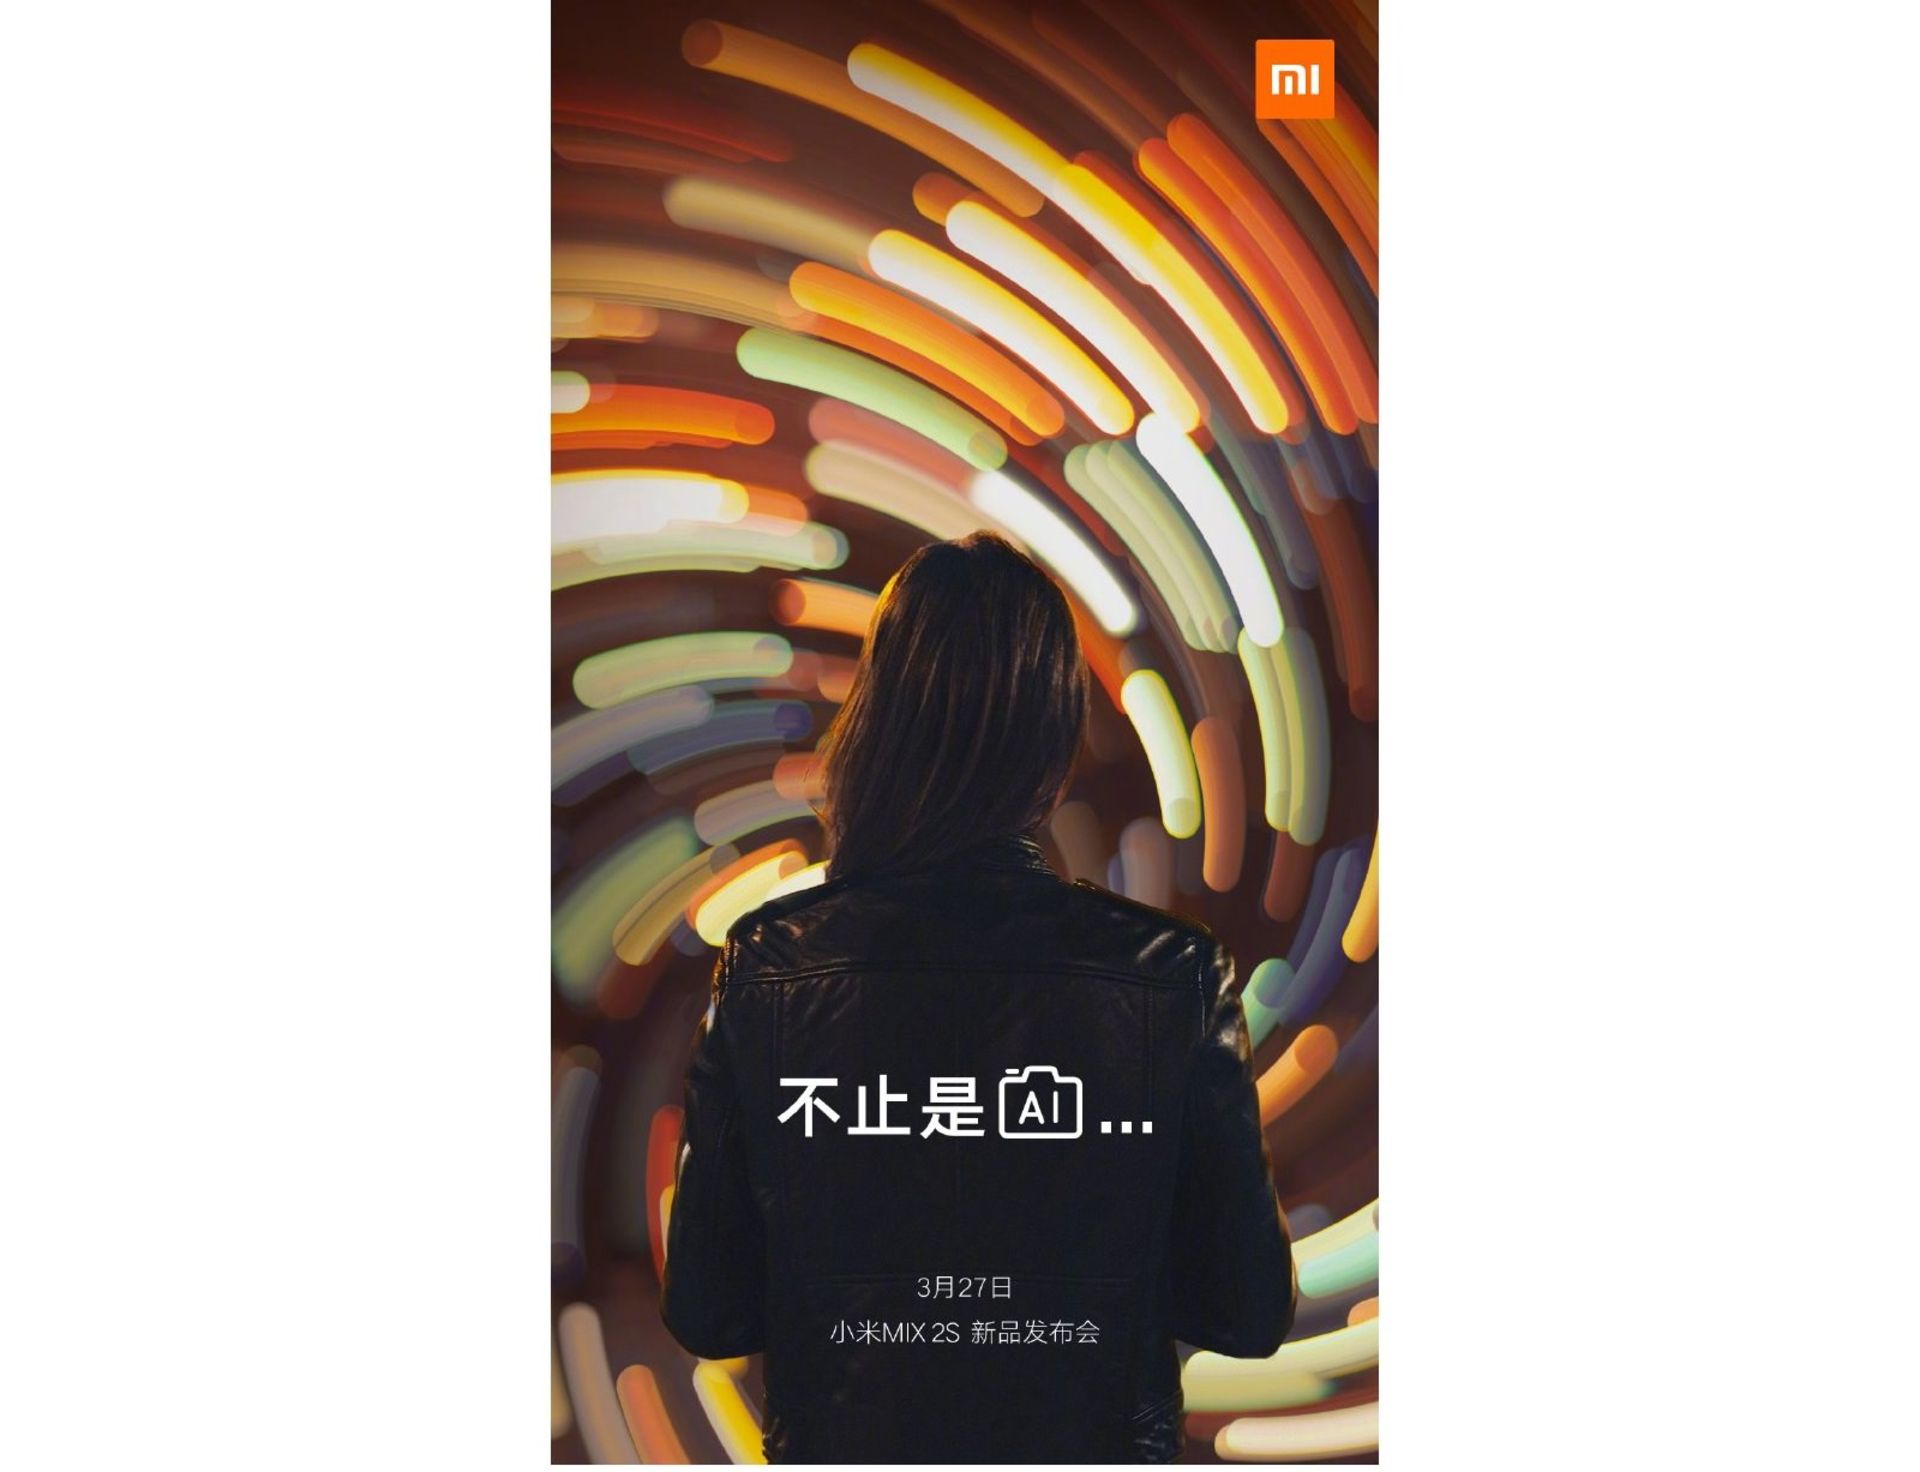 Xiaomi Mi Mix 2S First Teaser